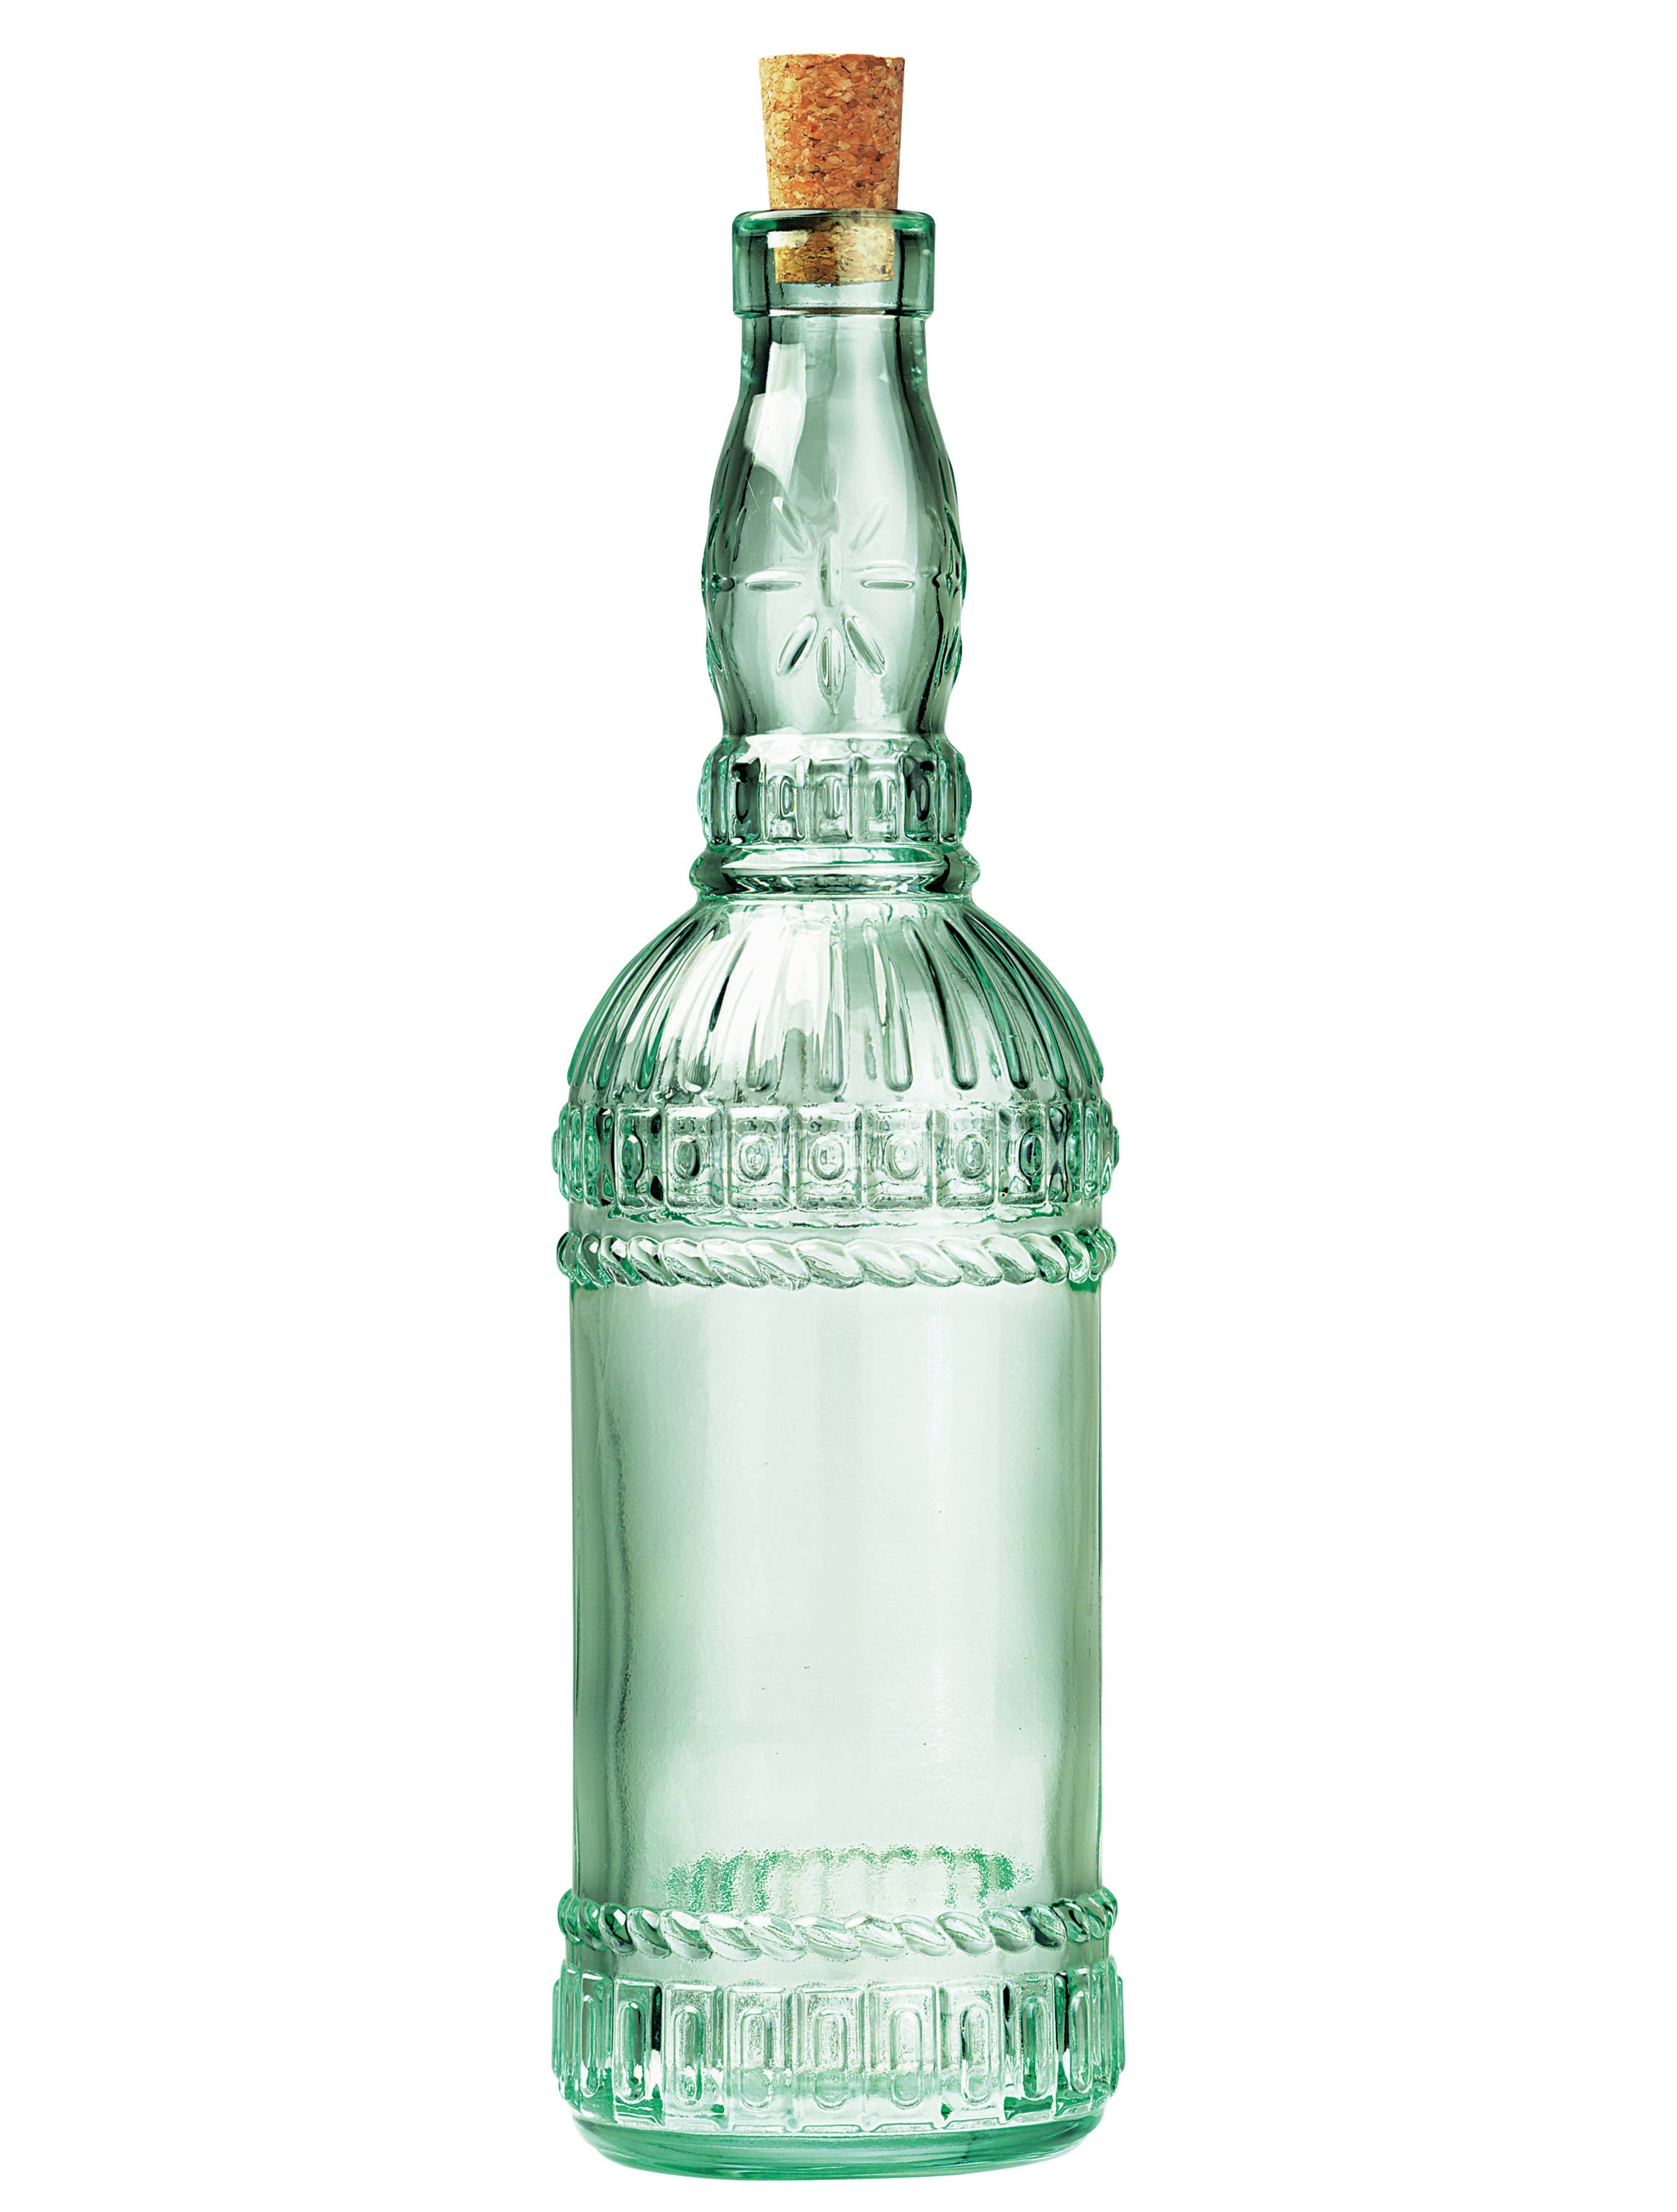 Glass oil vinegar bottles